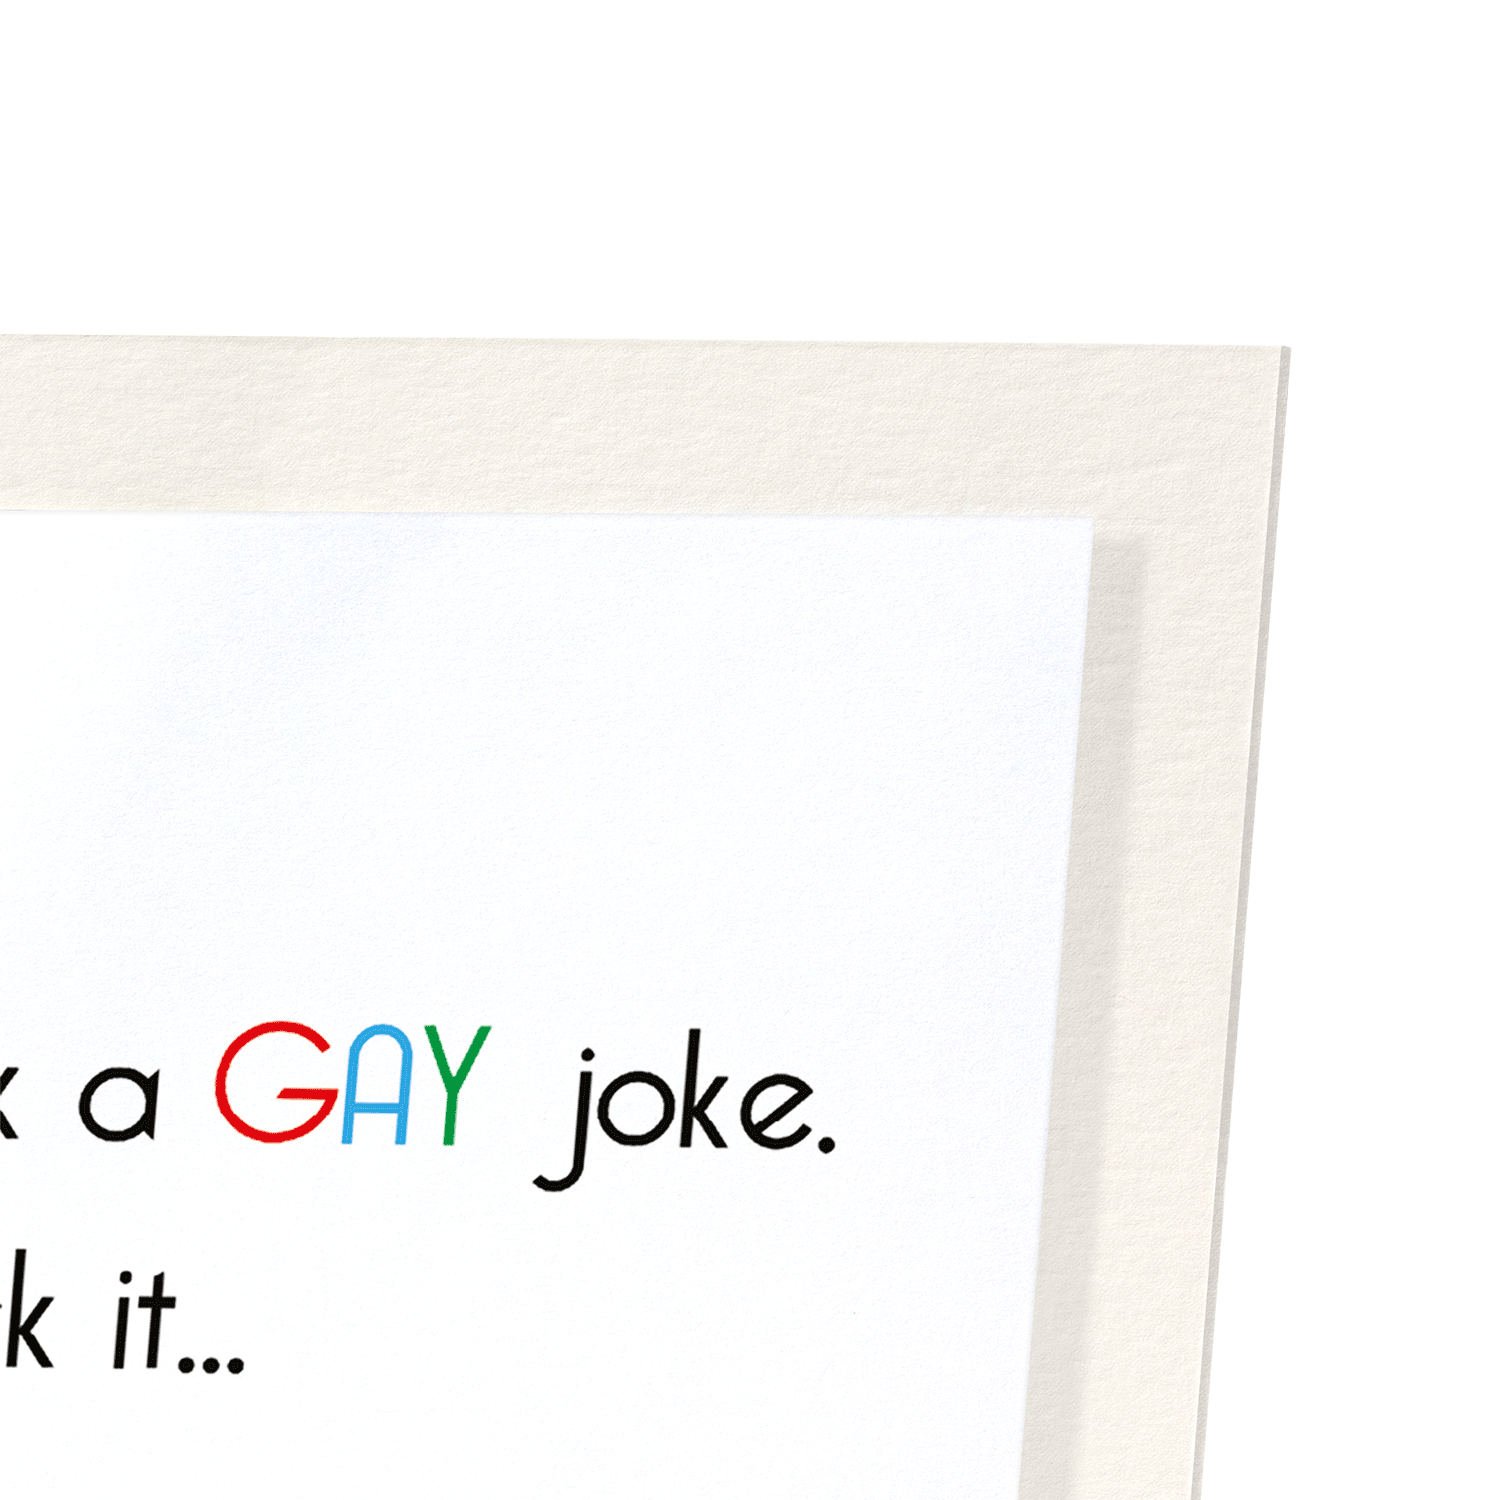 GAY JOKE BUTT FUCK: Funny Animal Art print